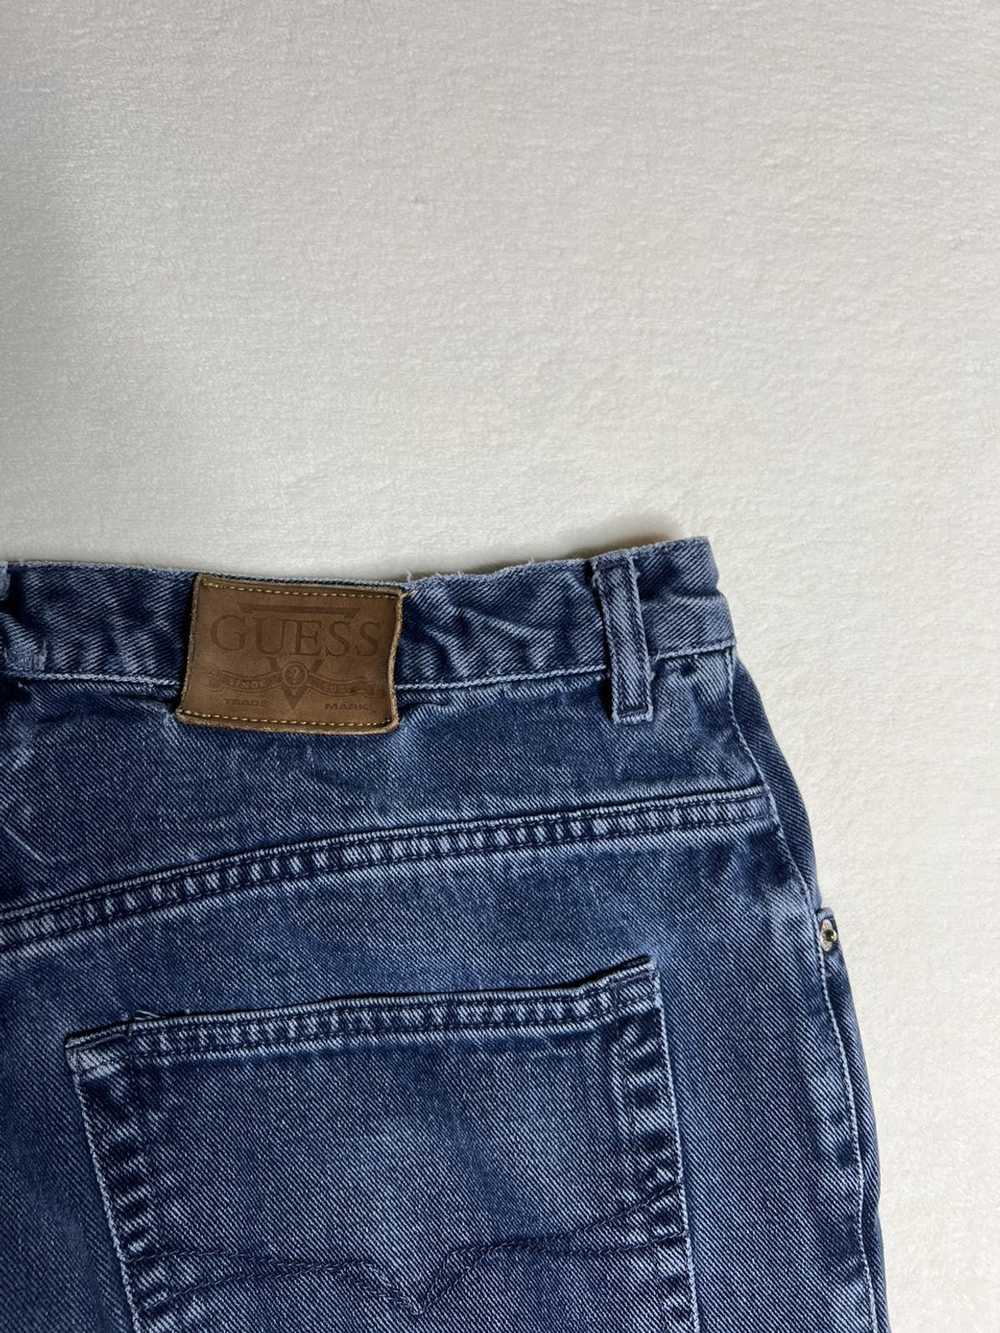 Guess Vintage Guess Denim Pants - image 5